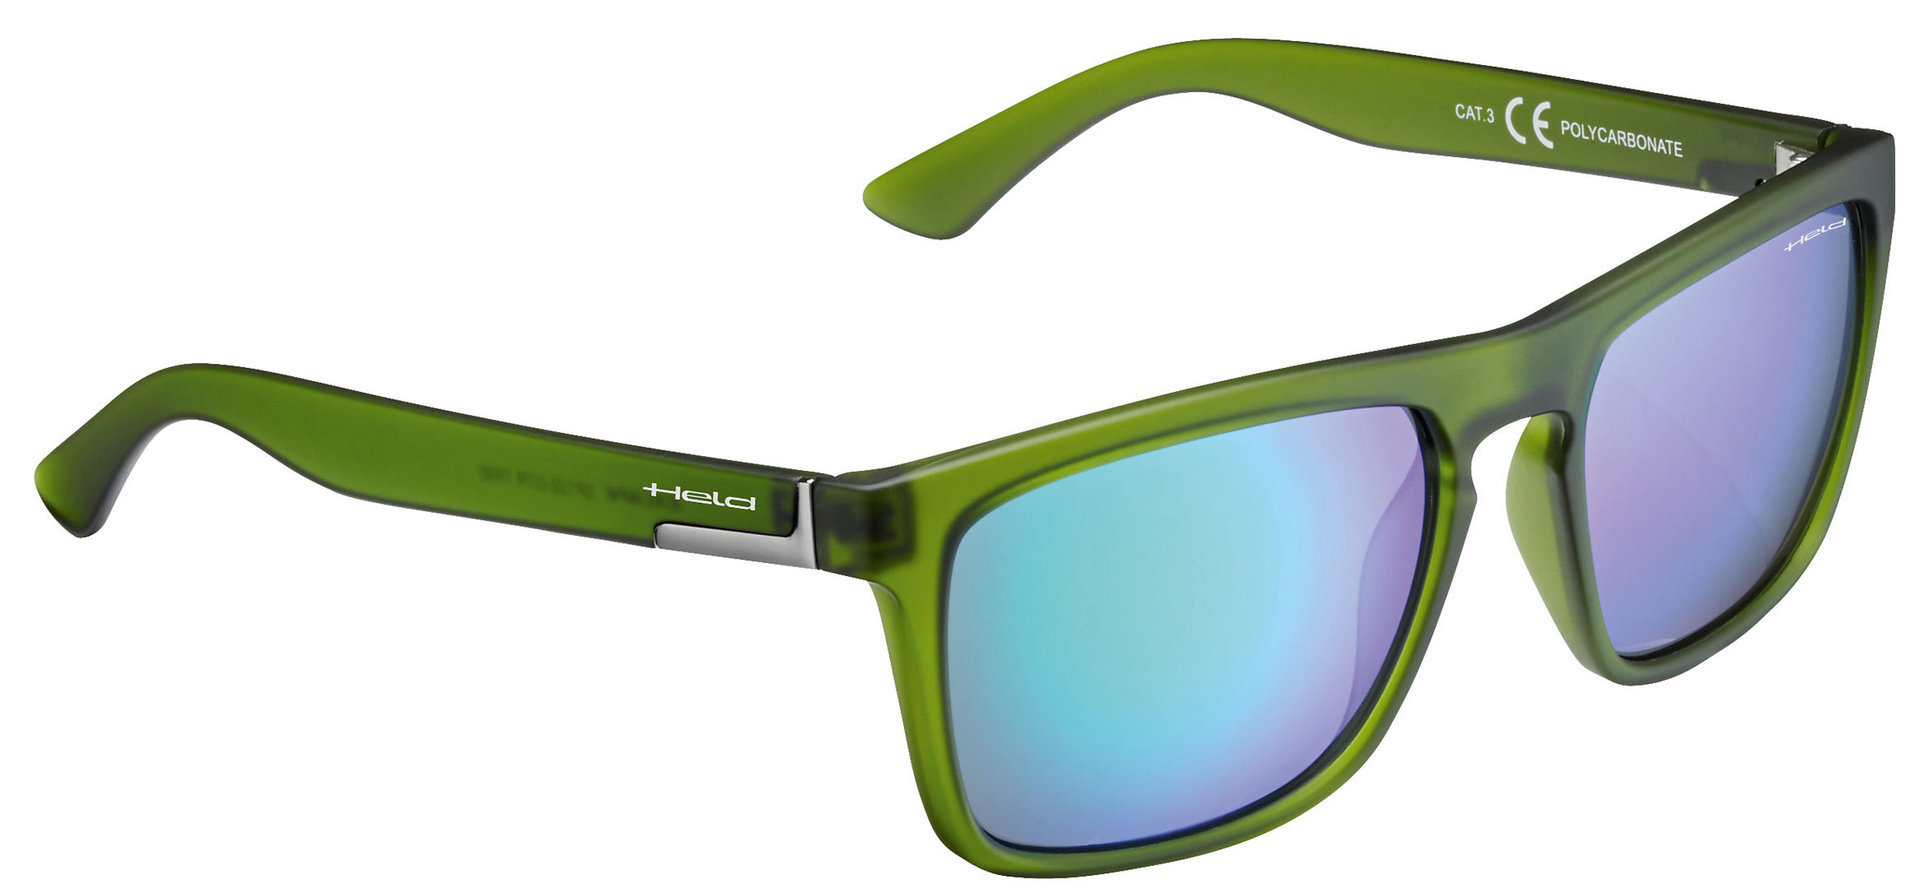 солнцезащитные очки 100% черный зеленый Очки Held 9541 солнцезащитные, зеленый